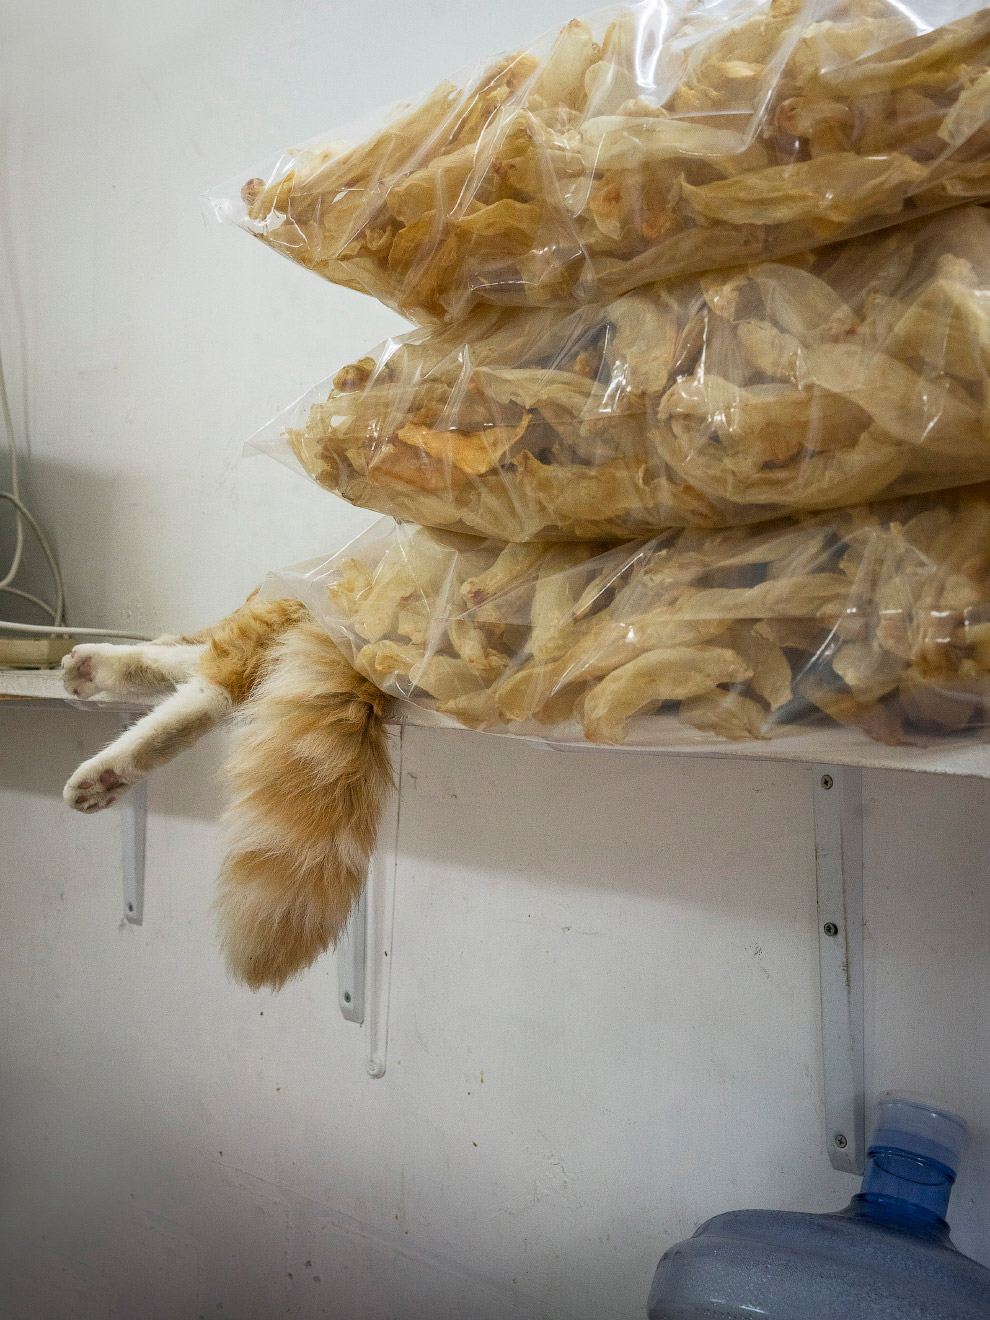 Тайная жизнь домашних животных в магазинах Гонконга